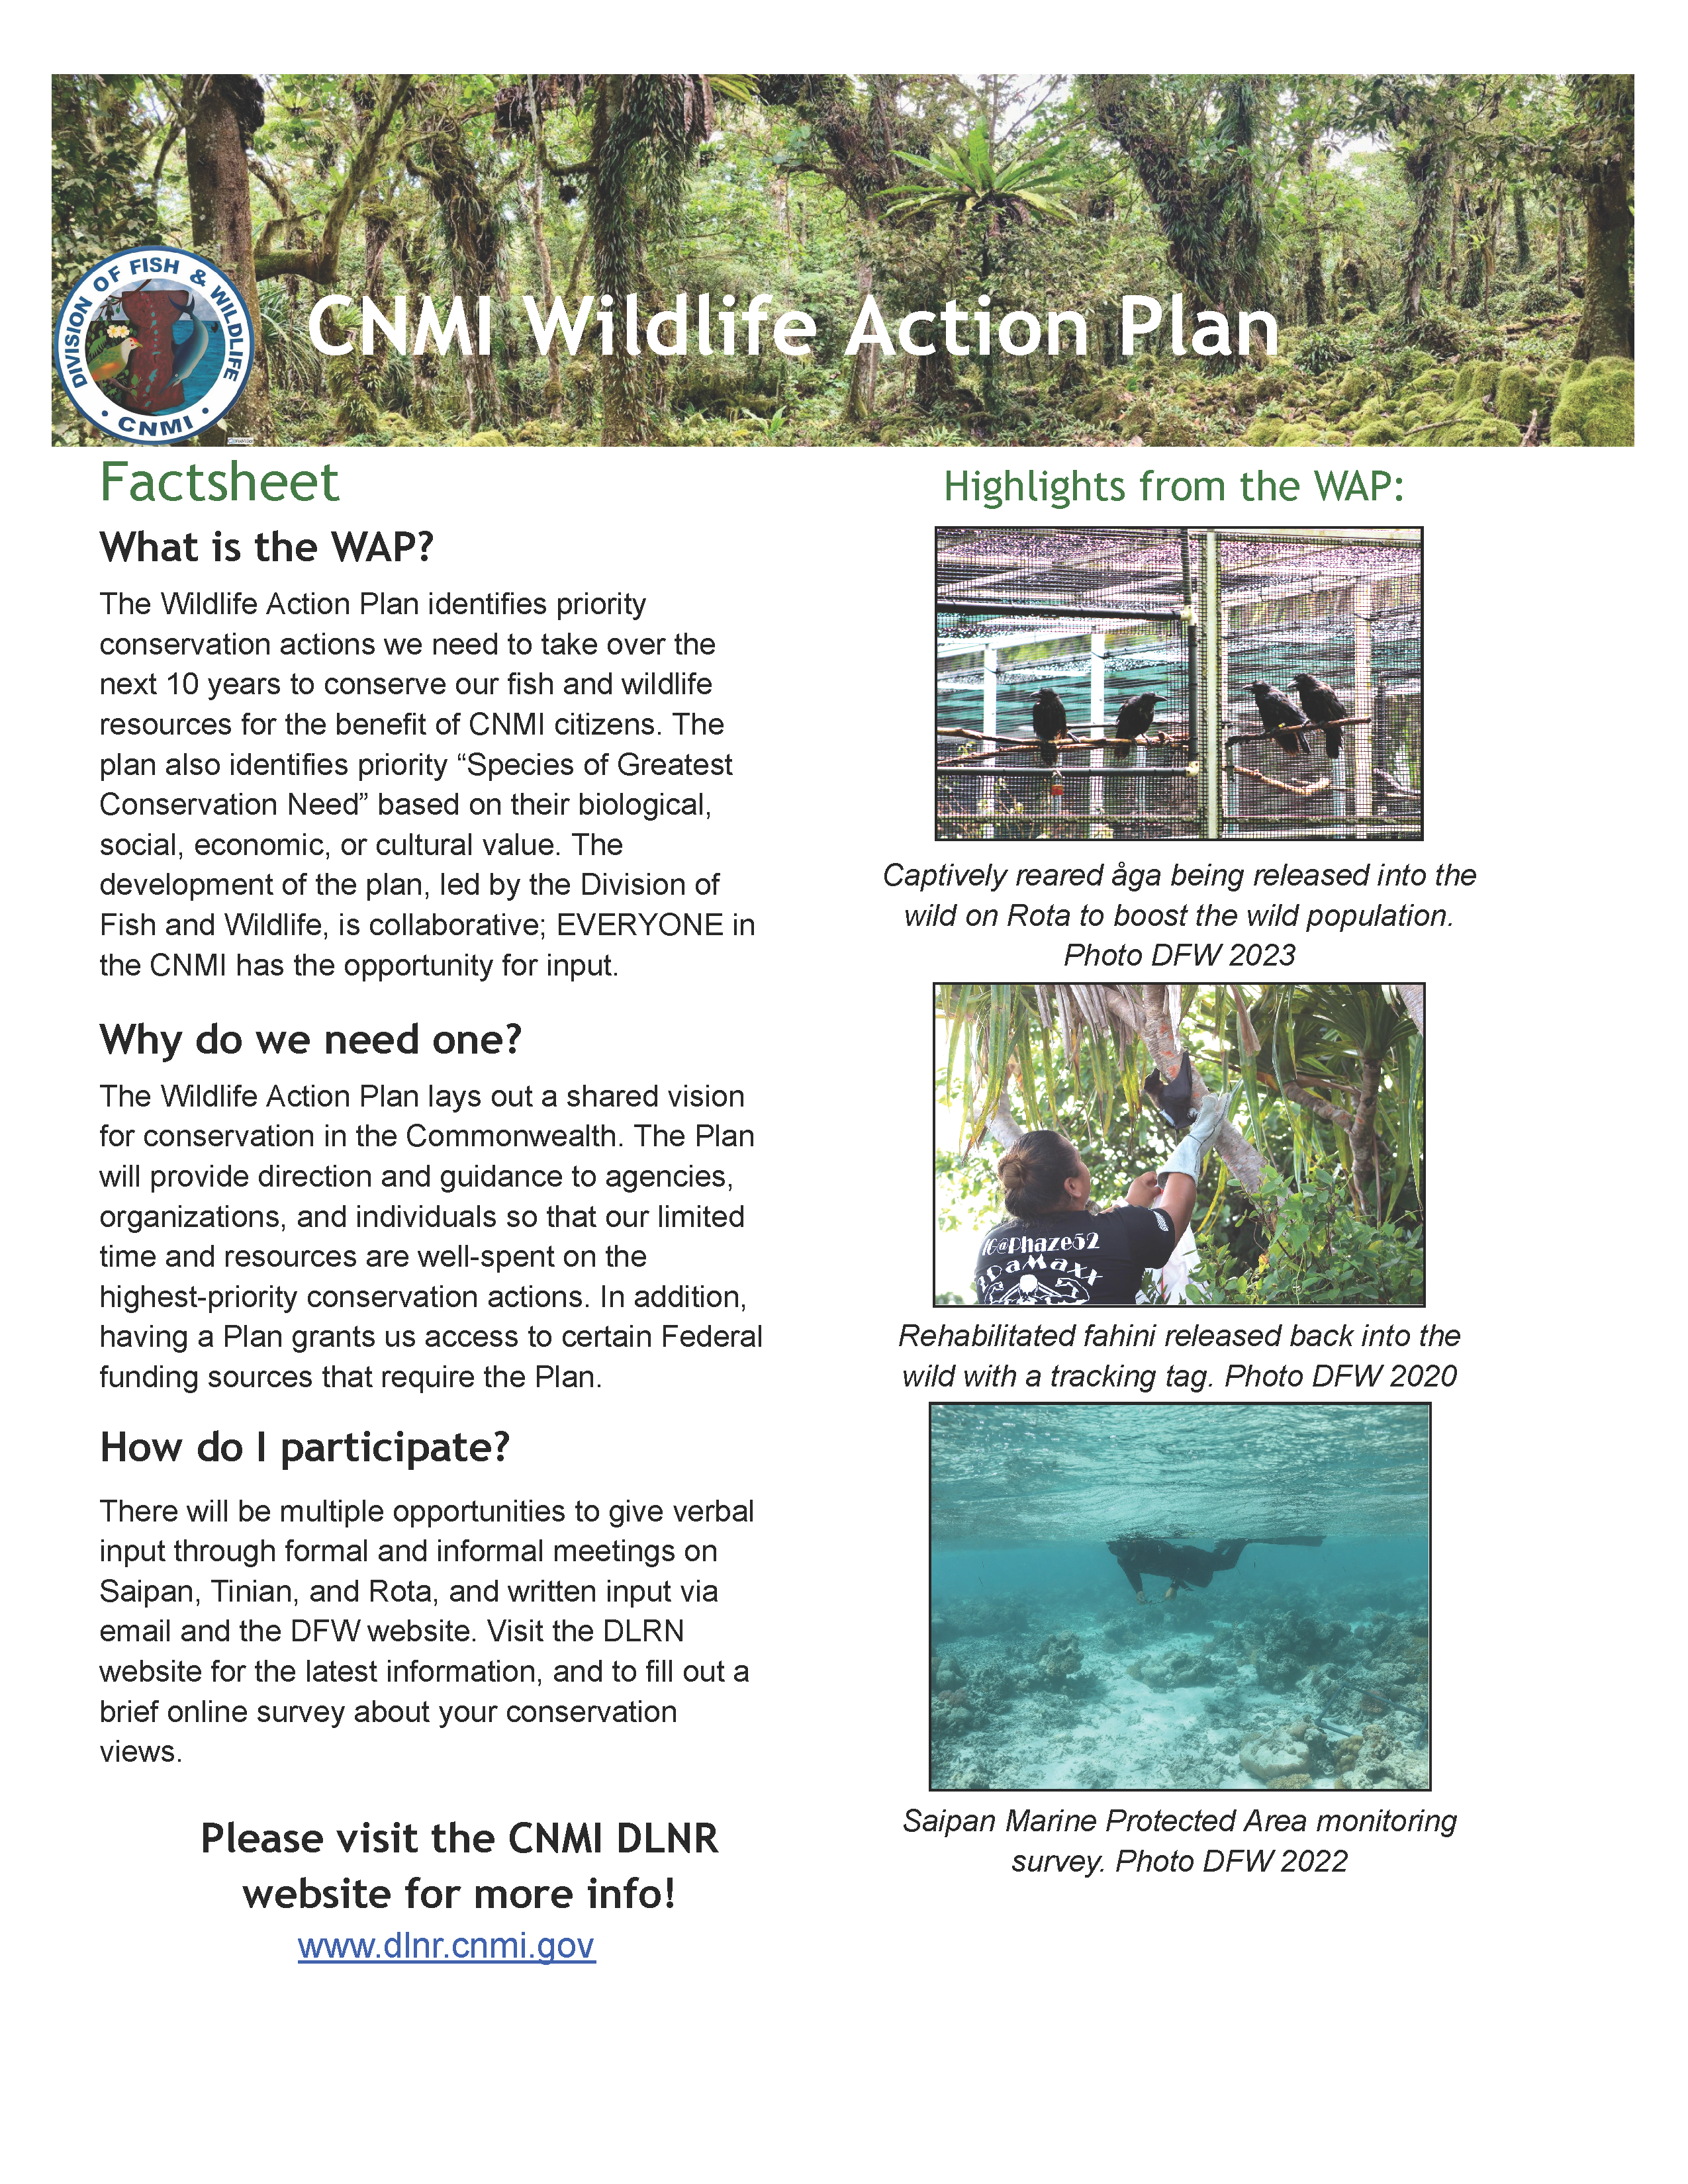 CNMI Wildlife Action Plan thumbnail